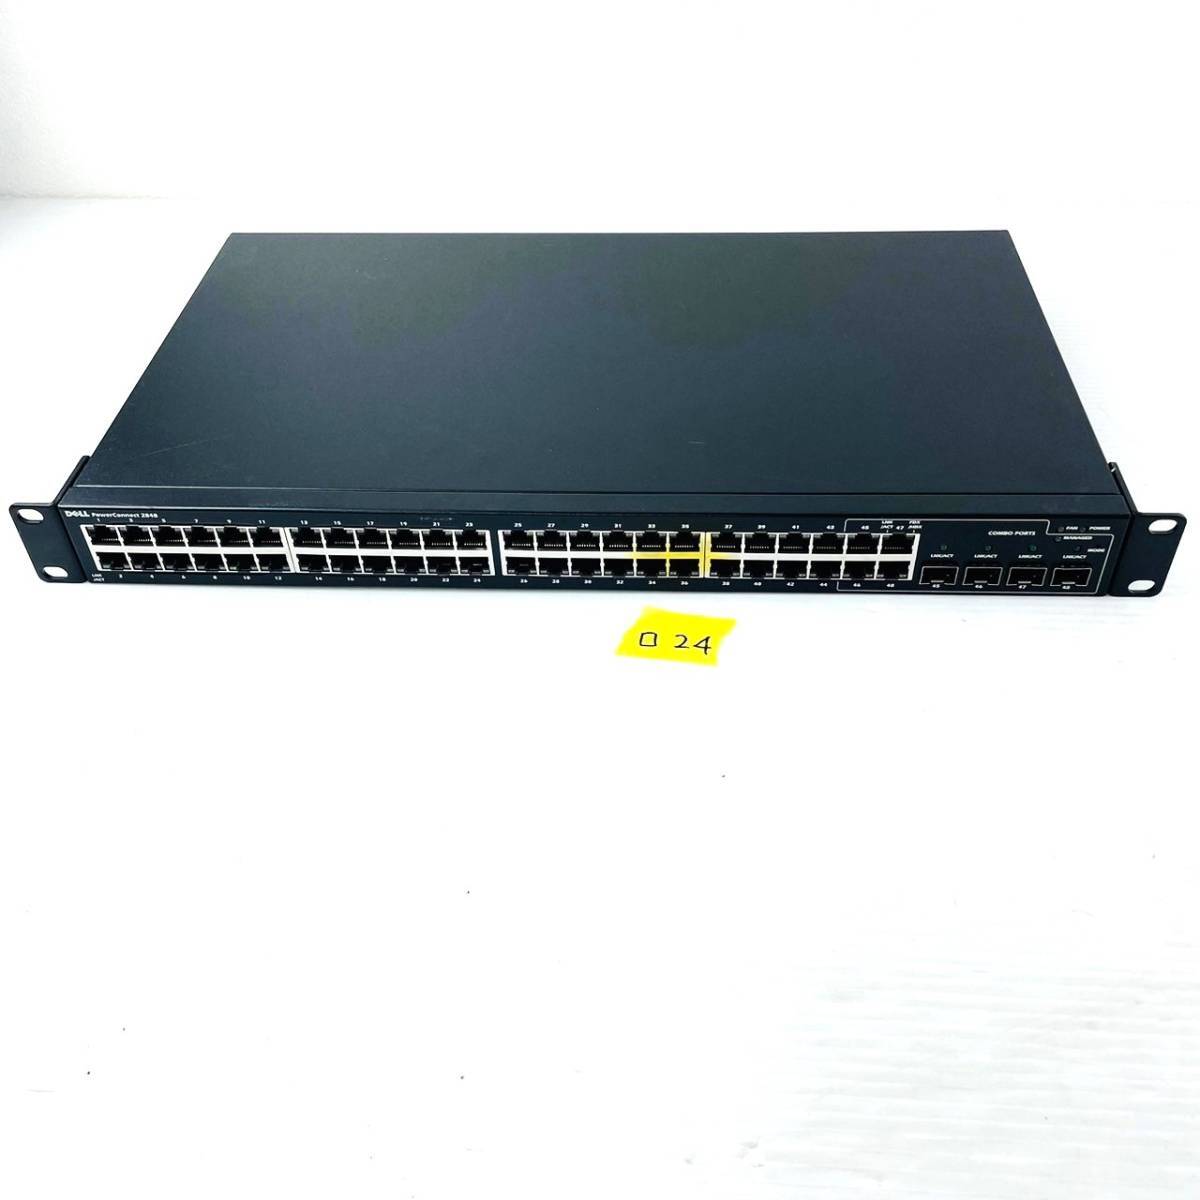 □24【通電OK】DELL PowerConnect 2848 スイッチ switch マネージド L2/L3 Gigabit Ethernet (10/100/1000) 1U ブラック 黒 デルの画像1